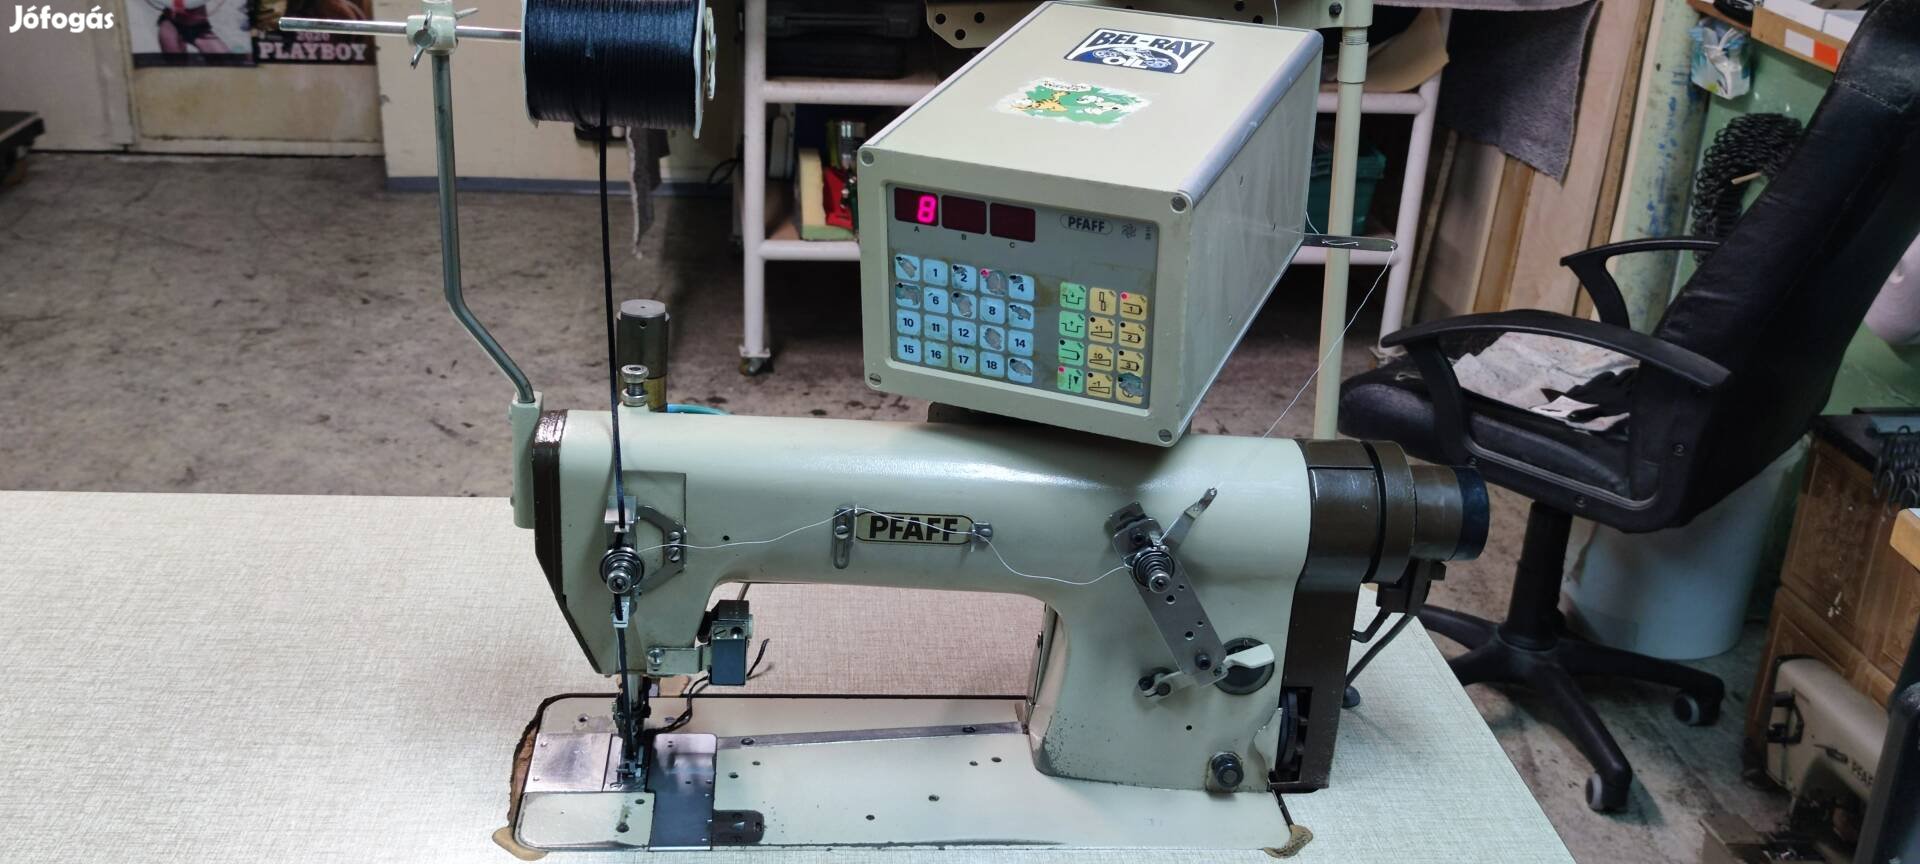 Pfaff ipari varrógép 3811 ráncoló